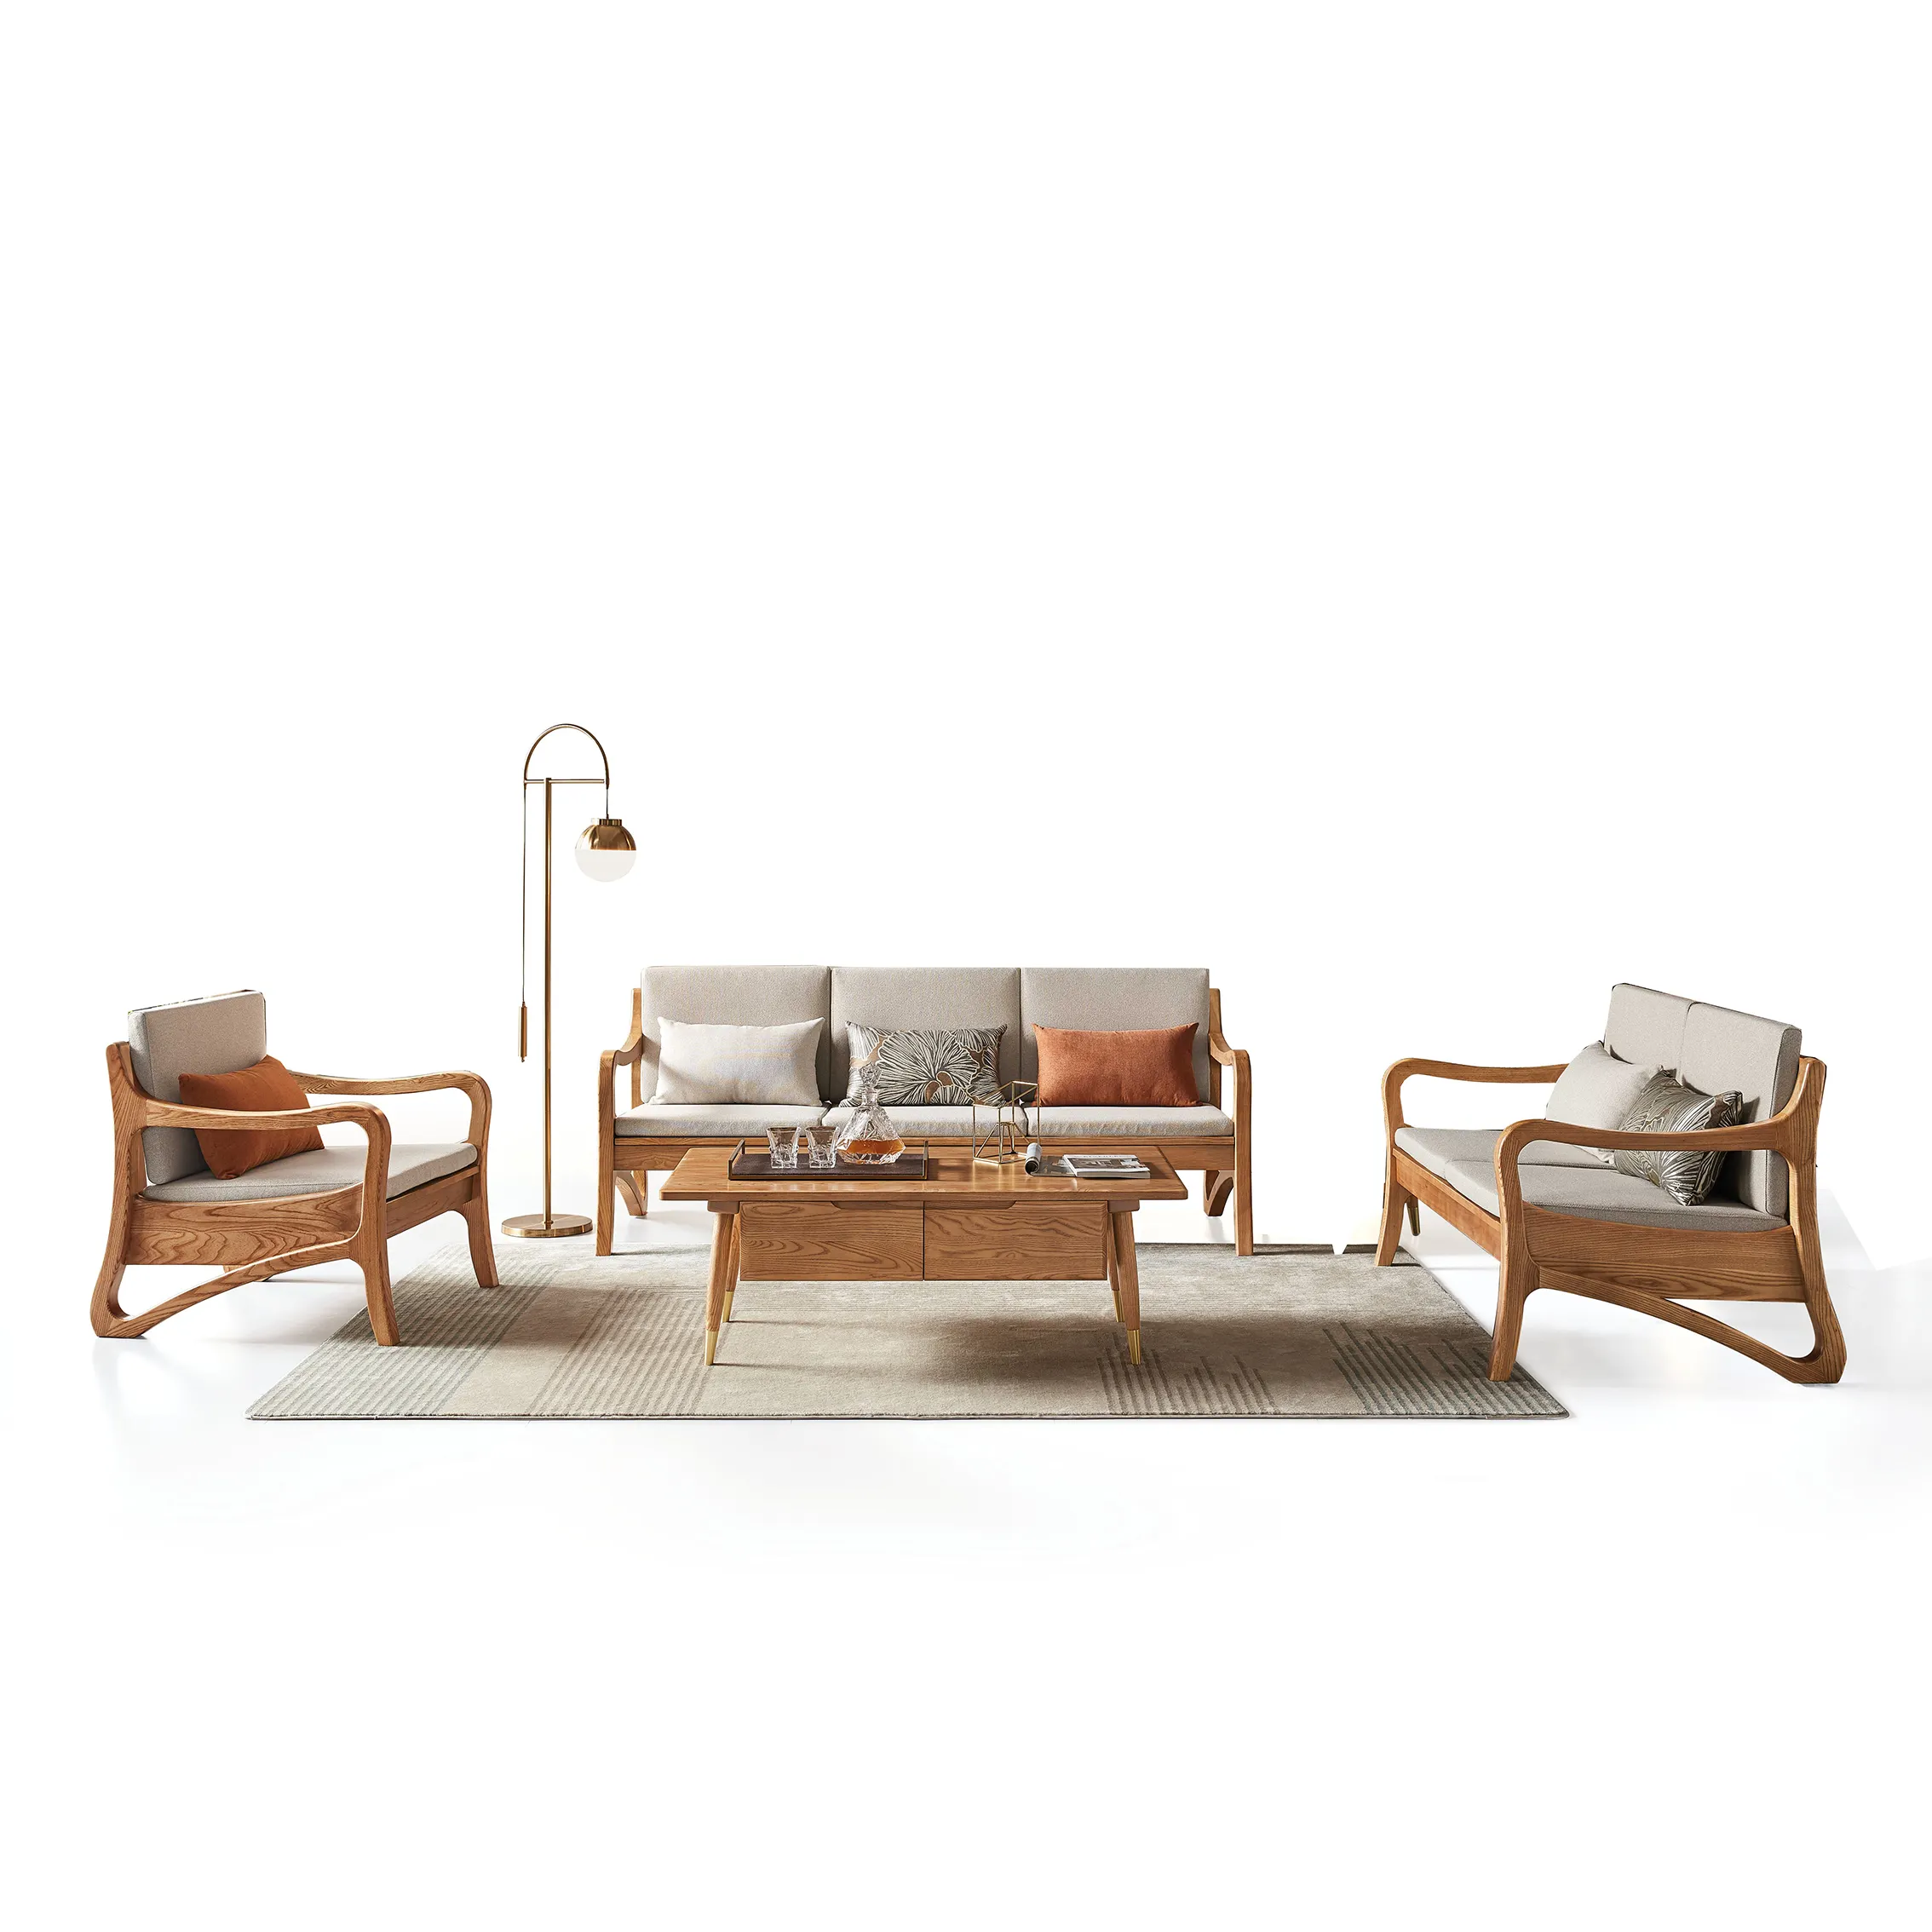 उच्च गुणवत्ता सरल डिजाइन नॉर्डिक सोफे 3 सीटों वाले सोफे कमरे में रहने वाले सेट. wooden फ्रेम सोफे सरल डिजाइन